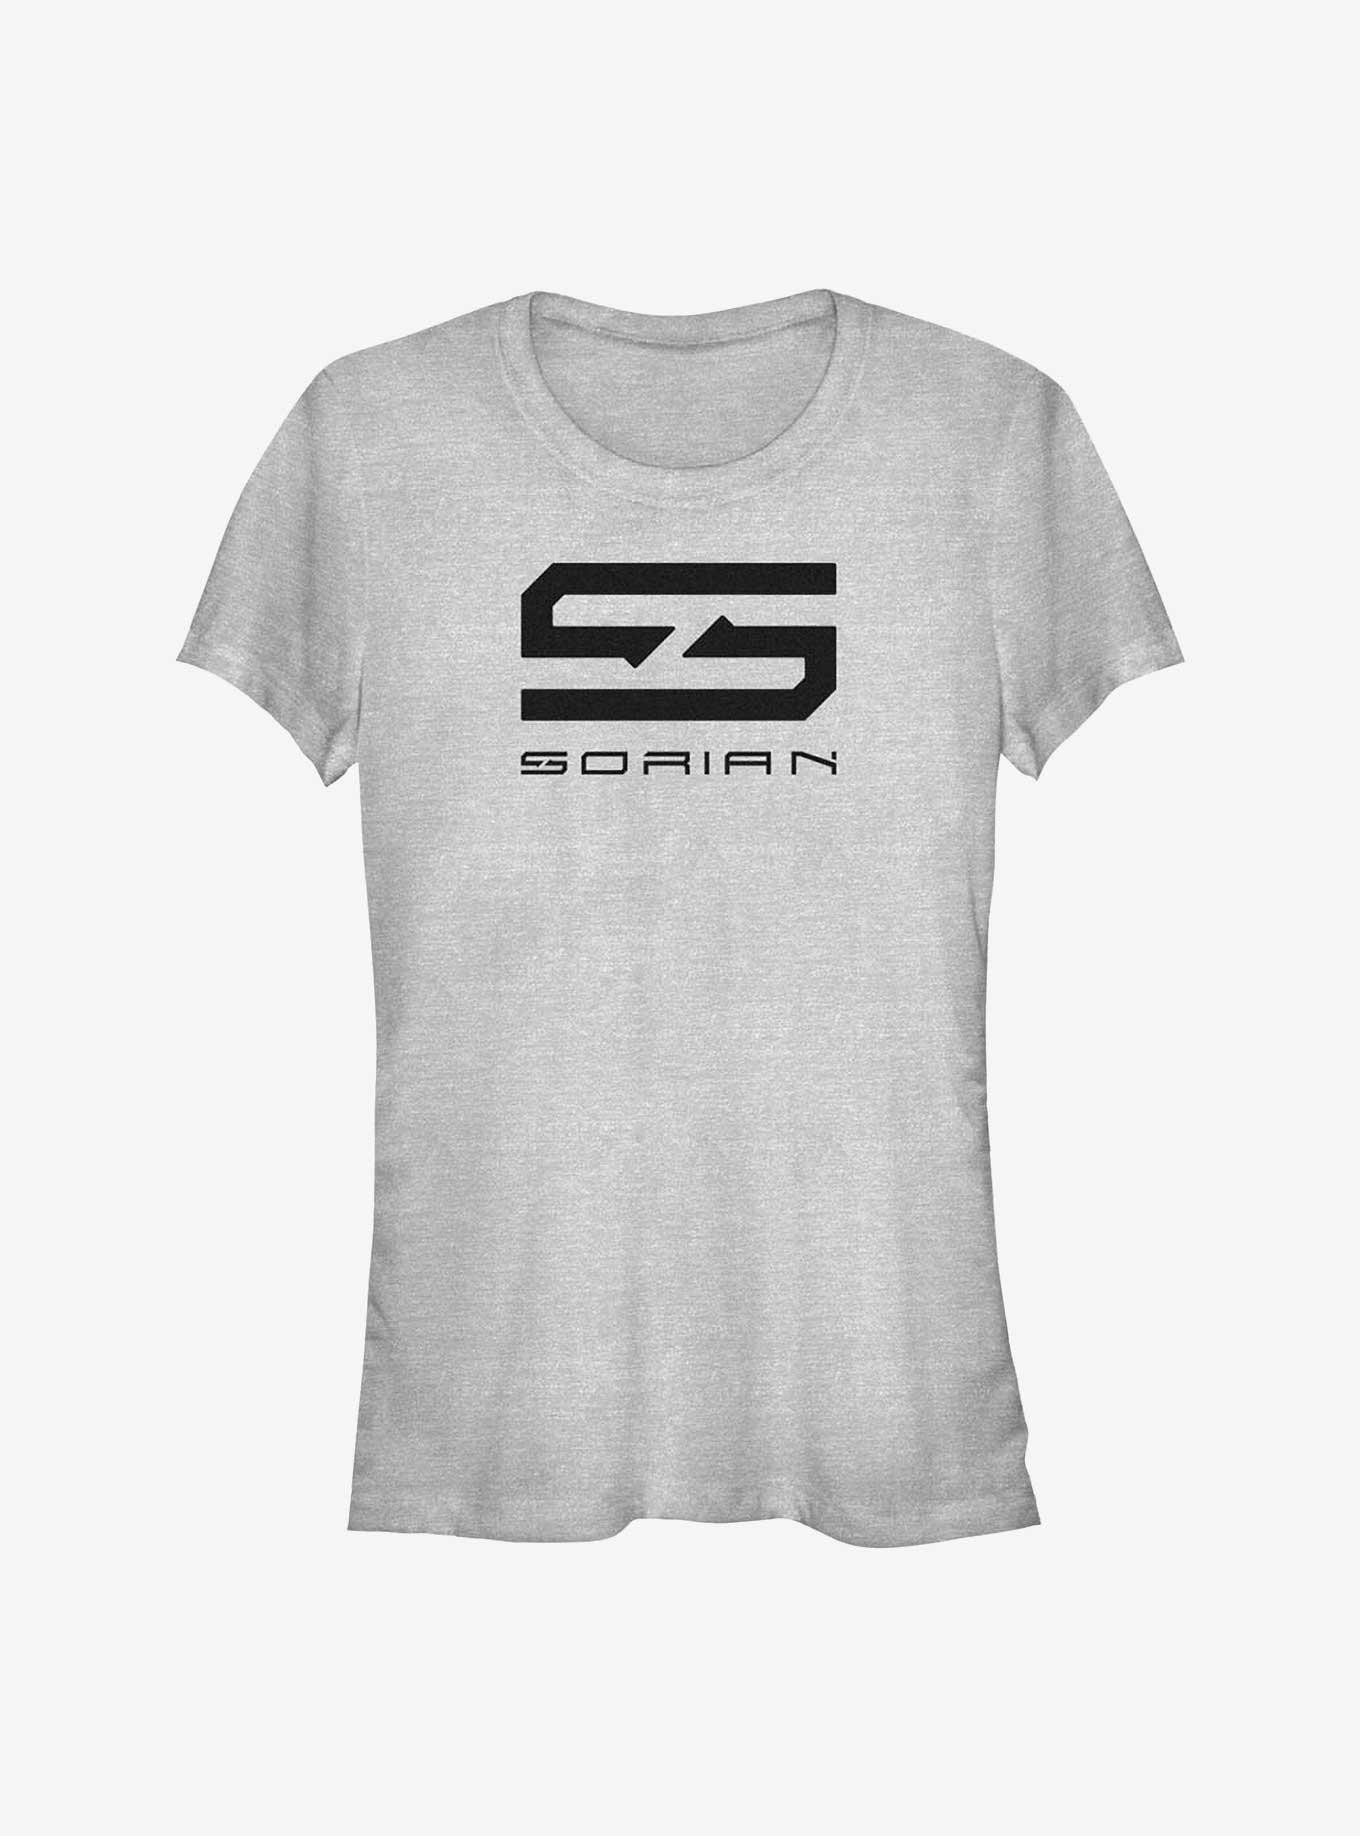 The Adam Project Sorian Technologies Logo Girls T-Shirt